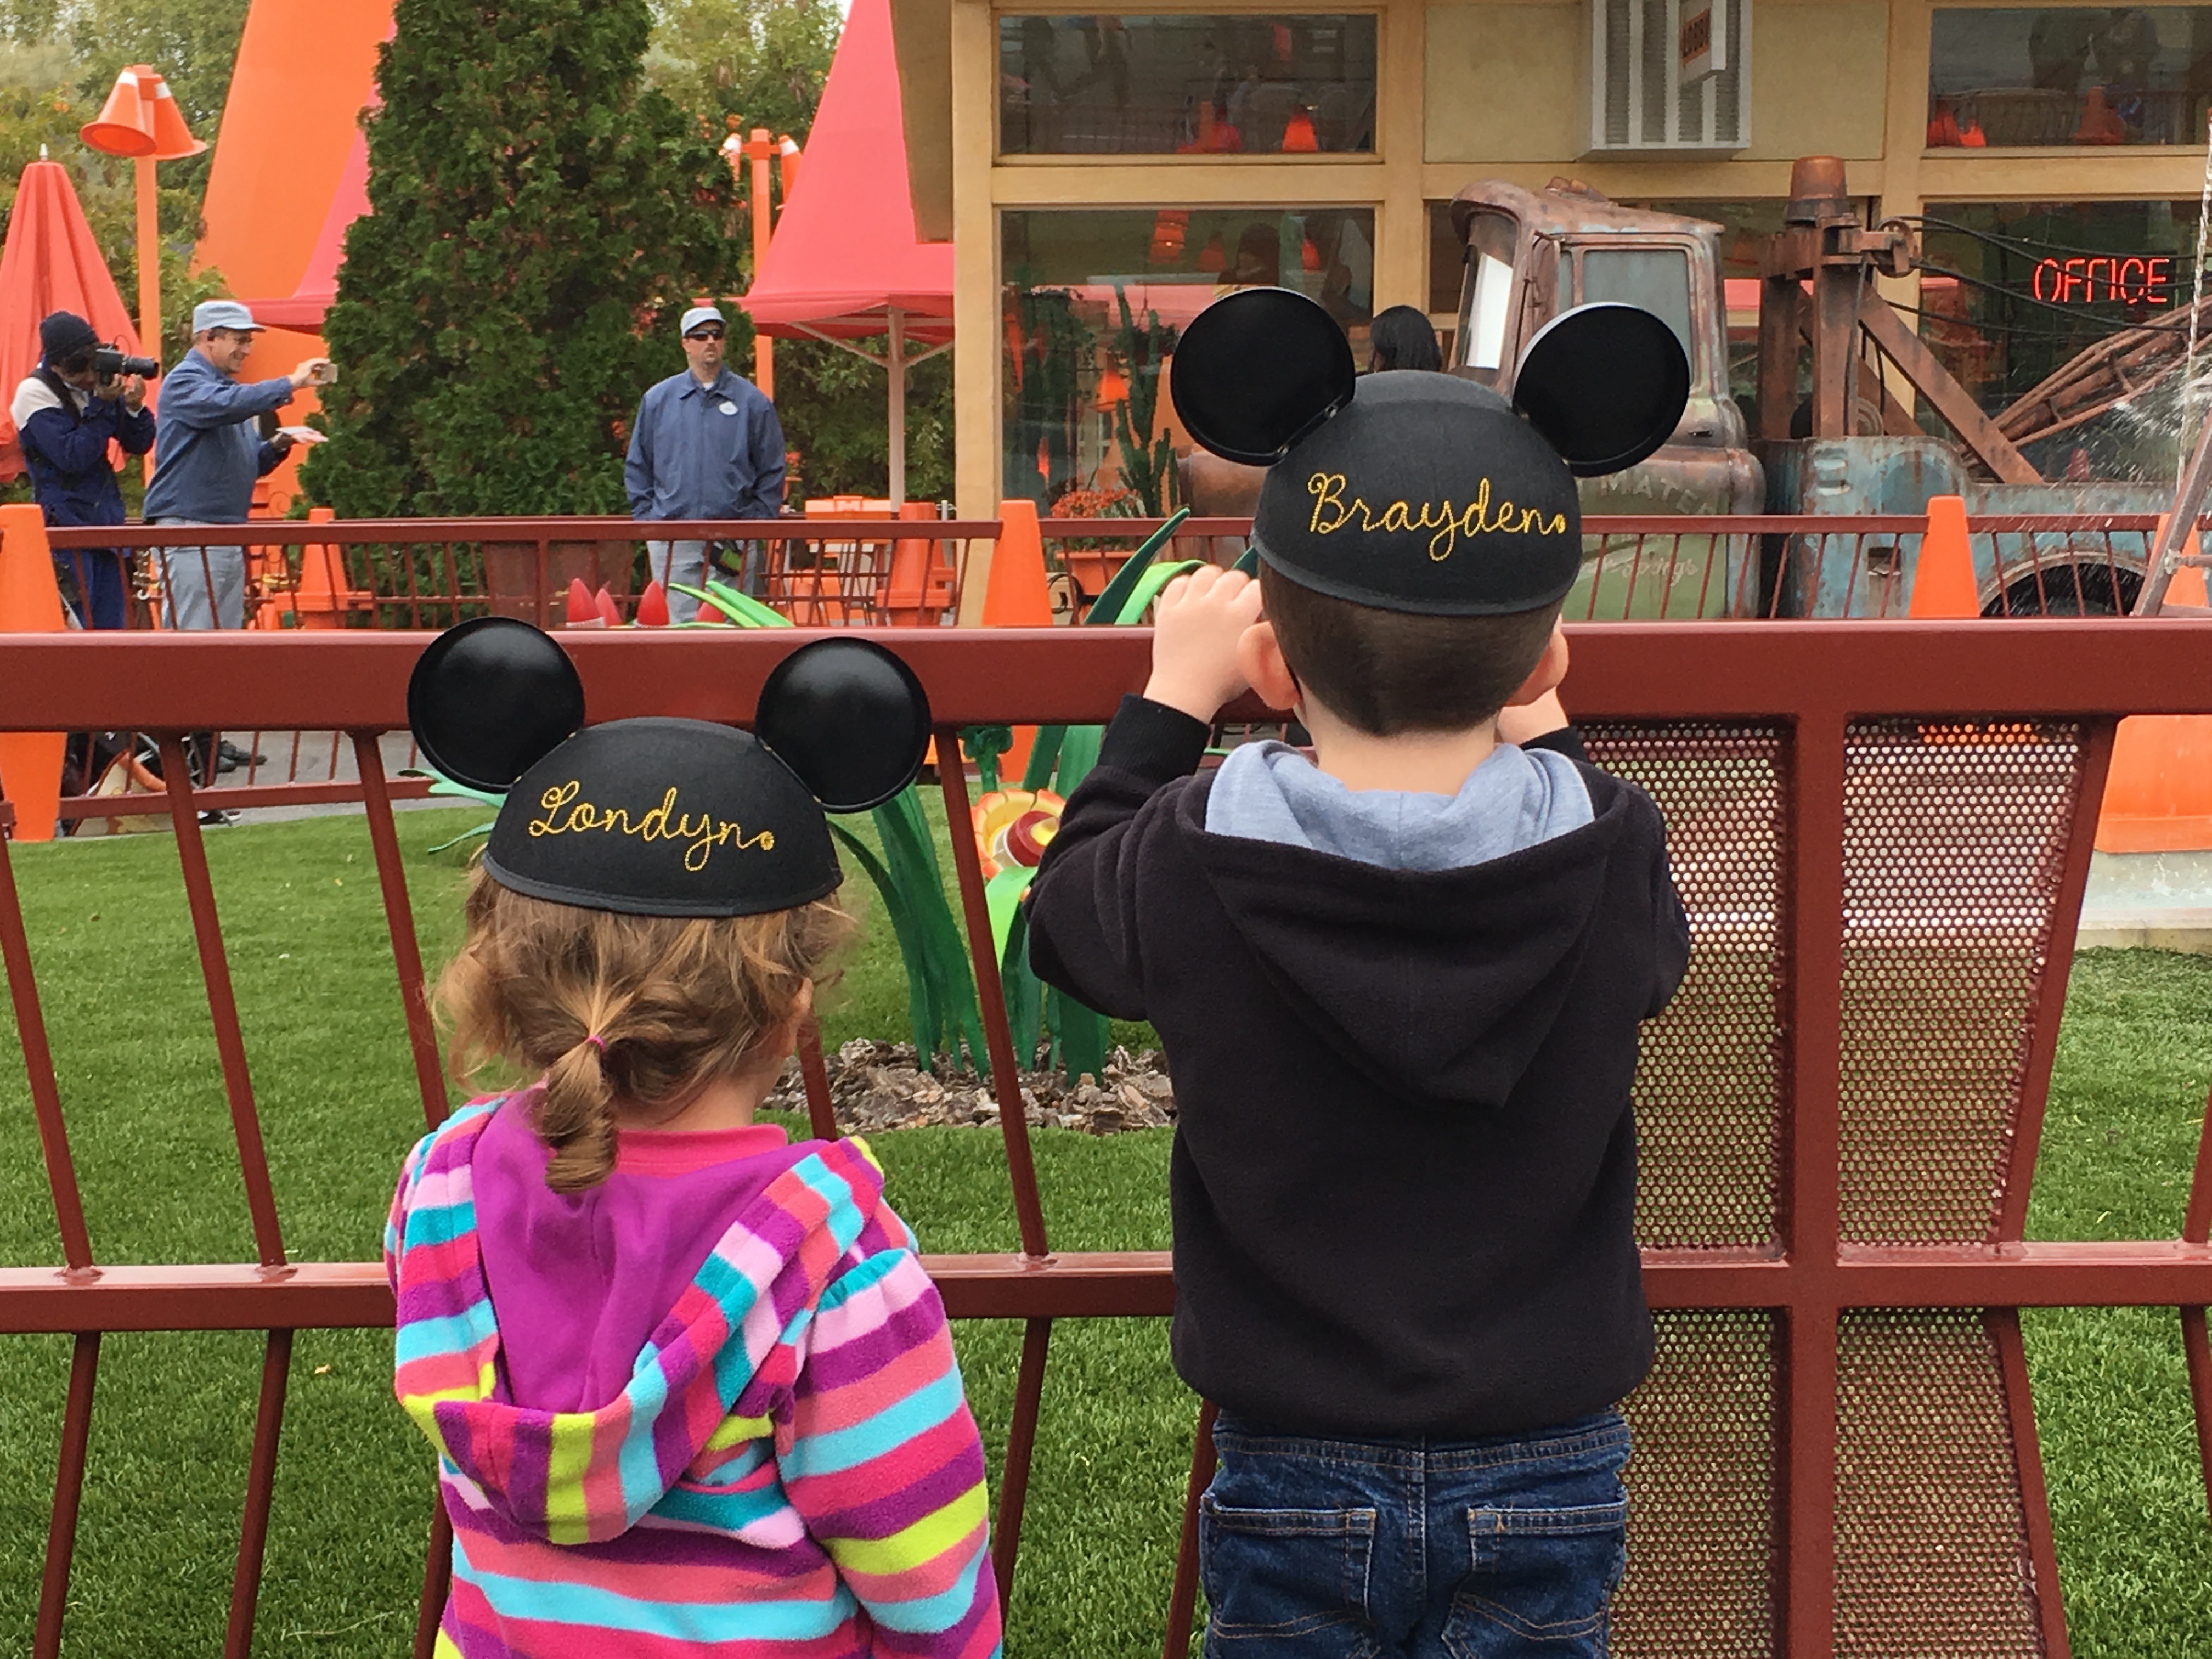 Tips for Disneyland with Preschool Kids